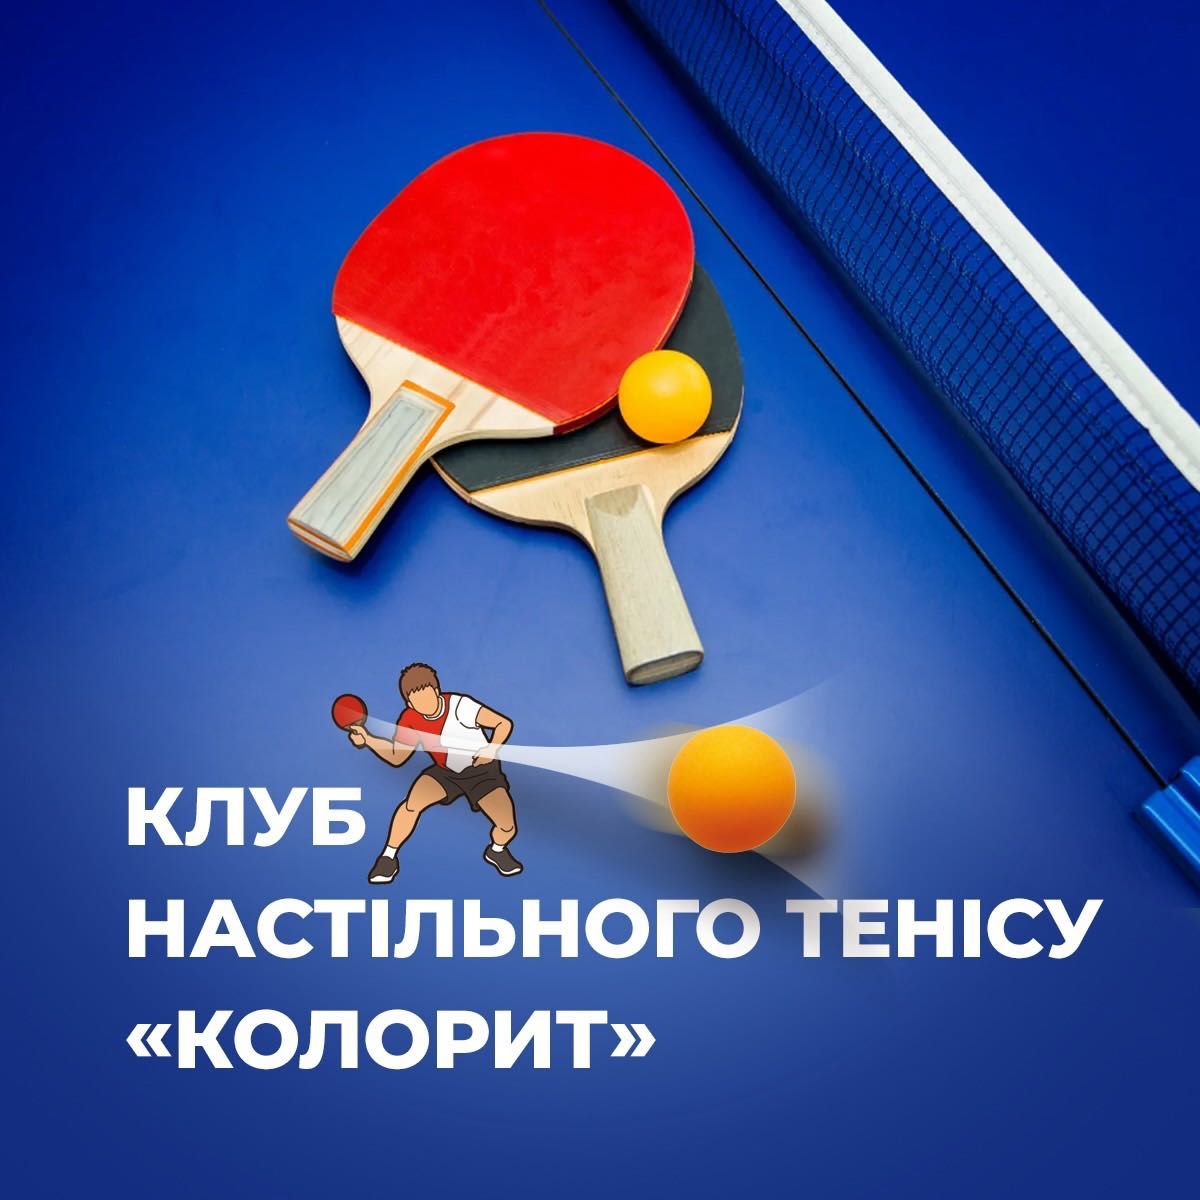 Клуб настільного тенісу КОЛОРИТ - оренда столів